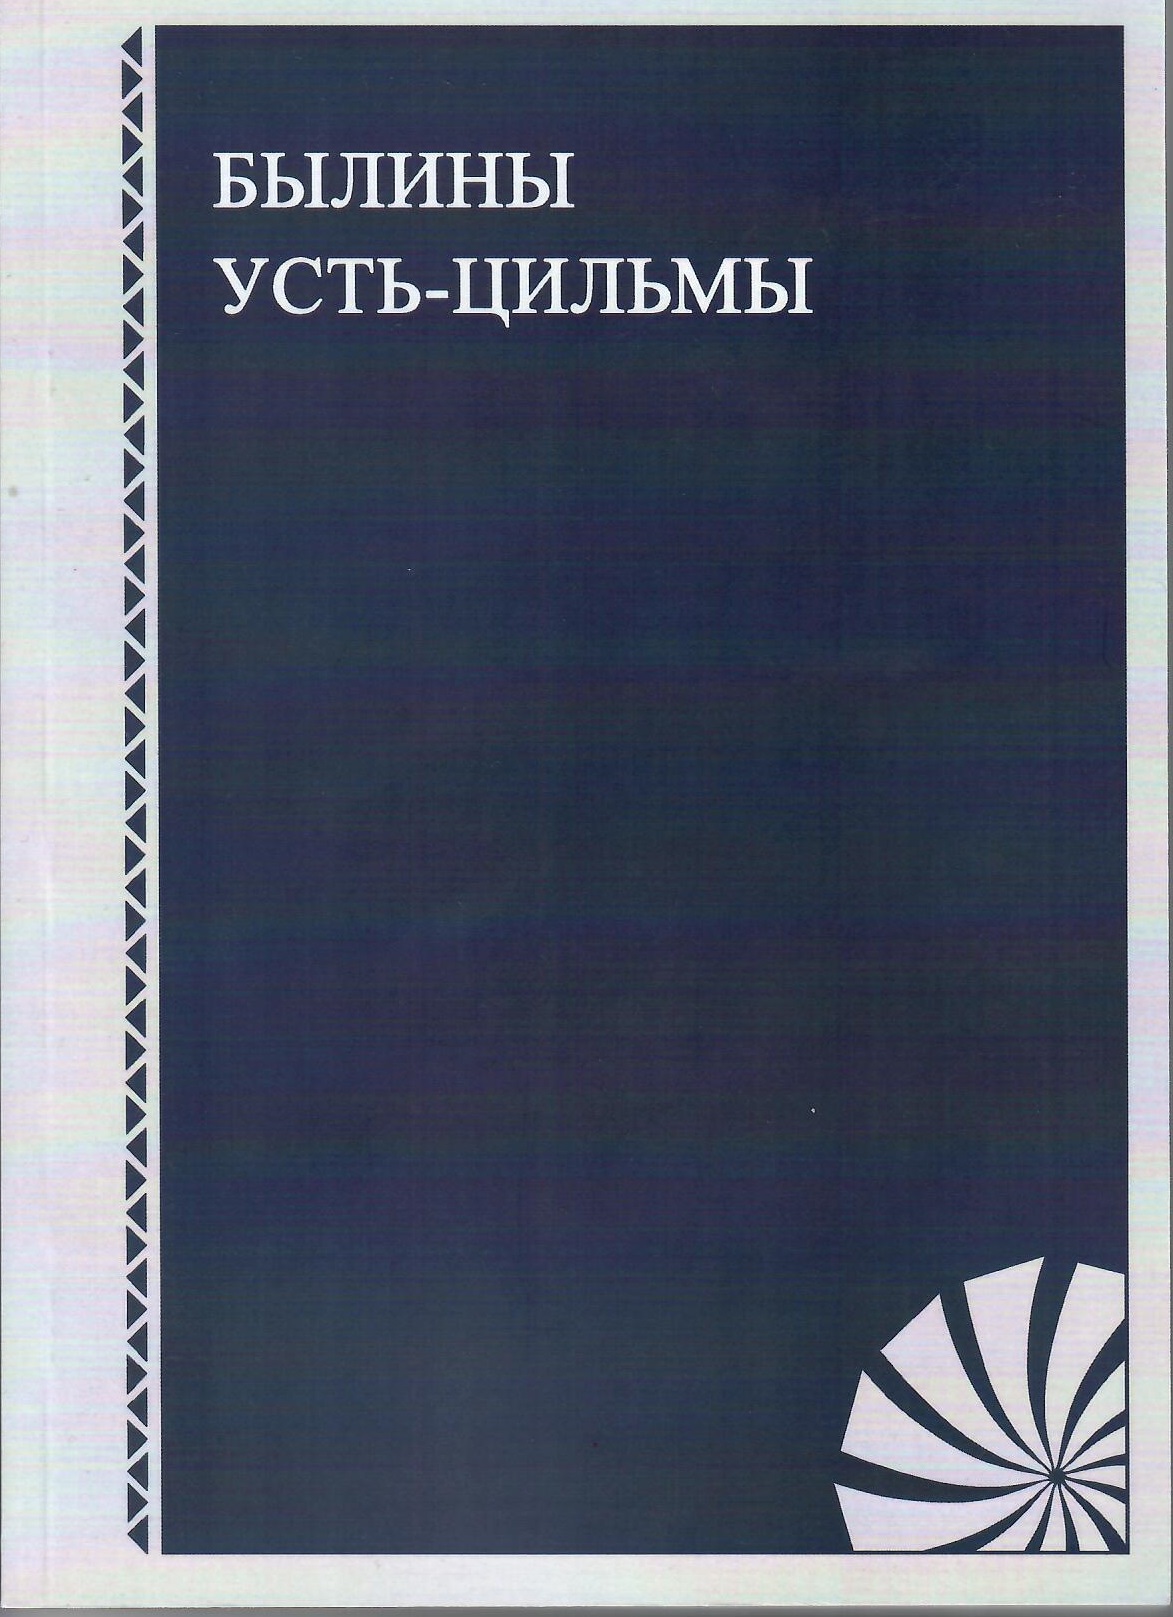 Обложка Былины Усть-Цильмы: справочно-библиографические материалы